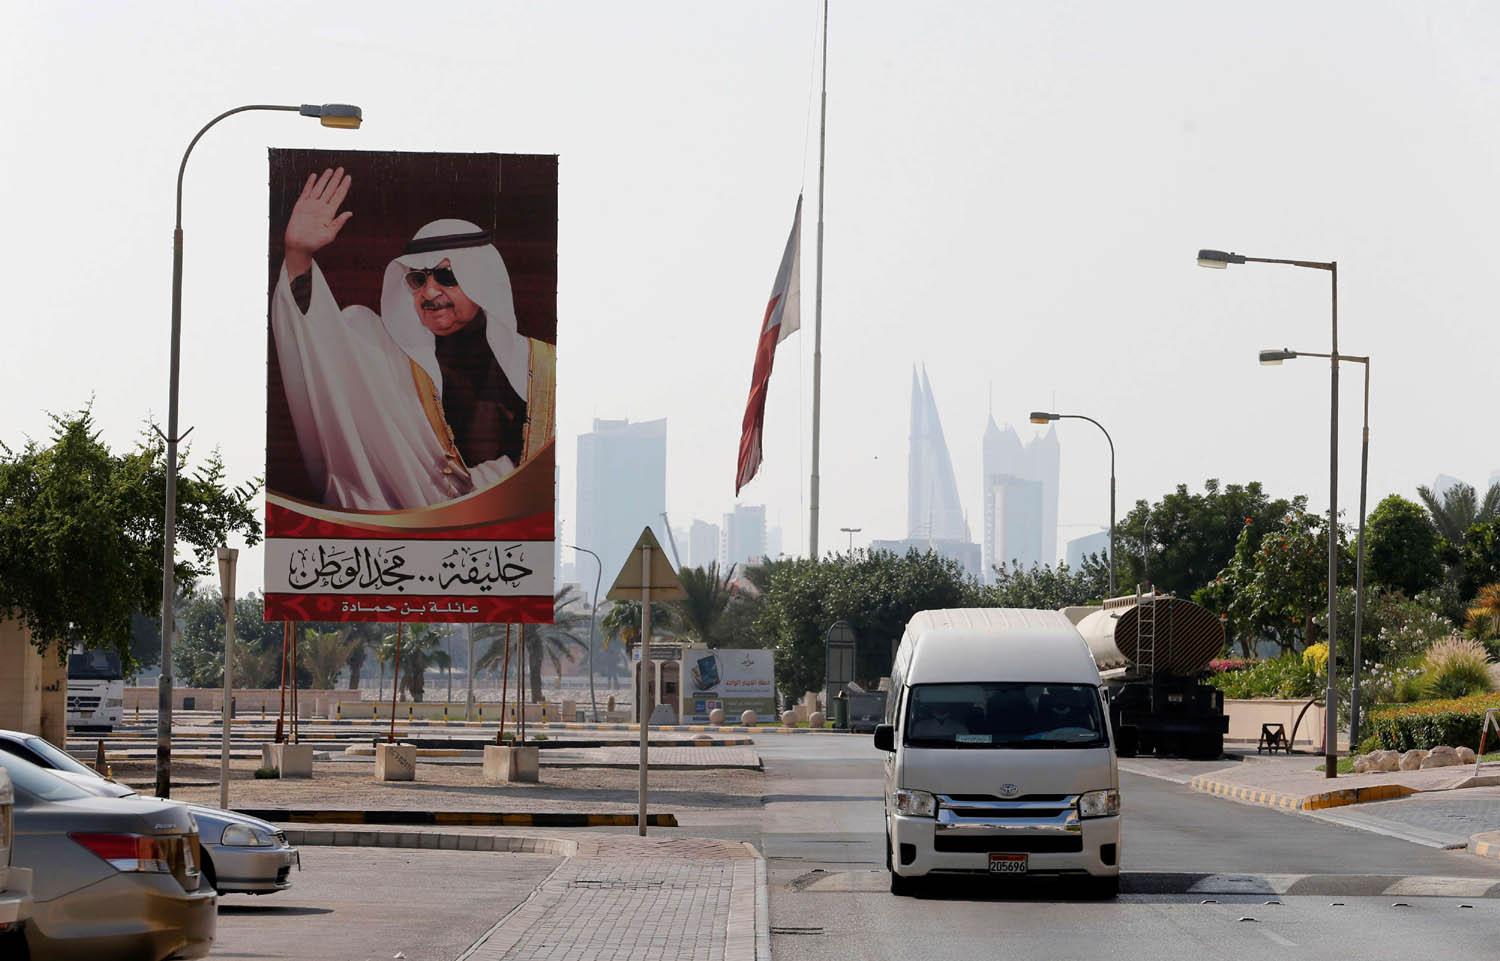 صورة كبيرة للأمير خليفة بن سلمان في احد احياء المنامة